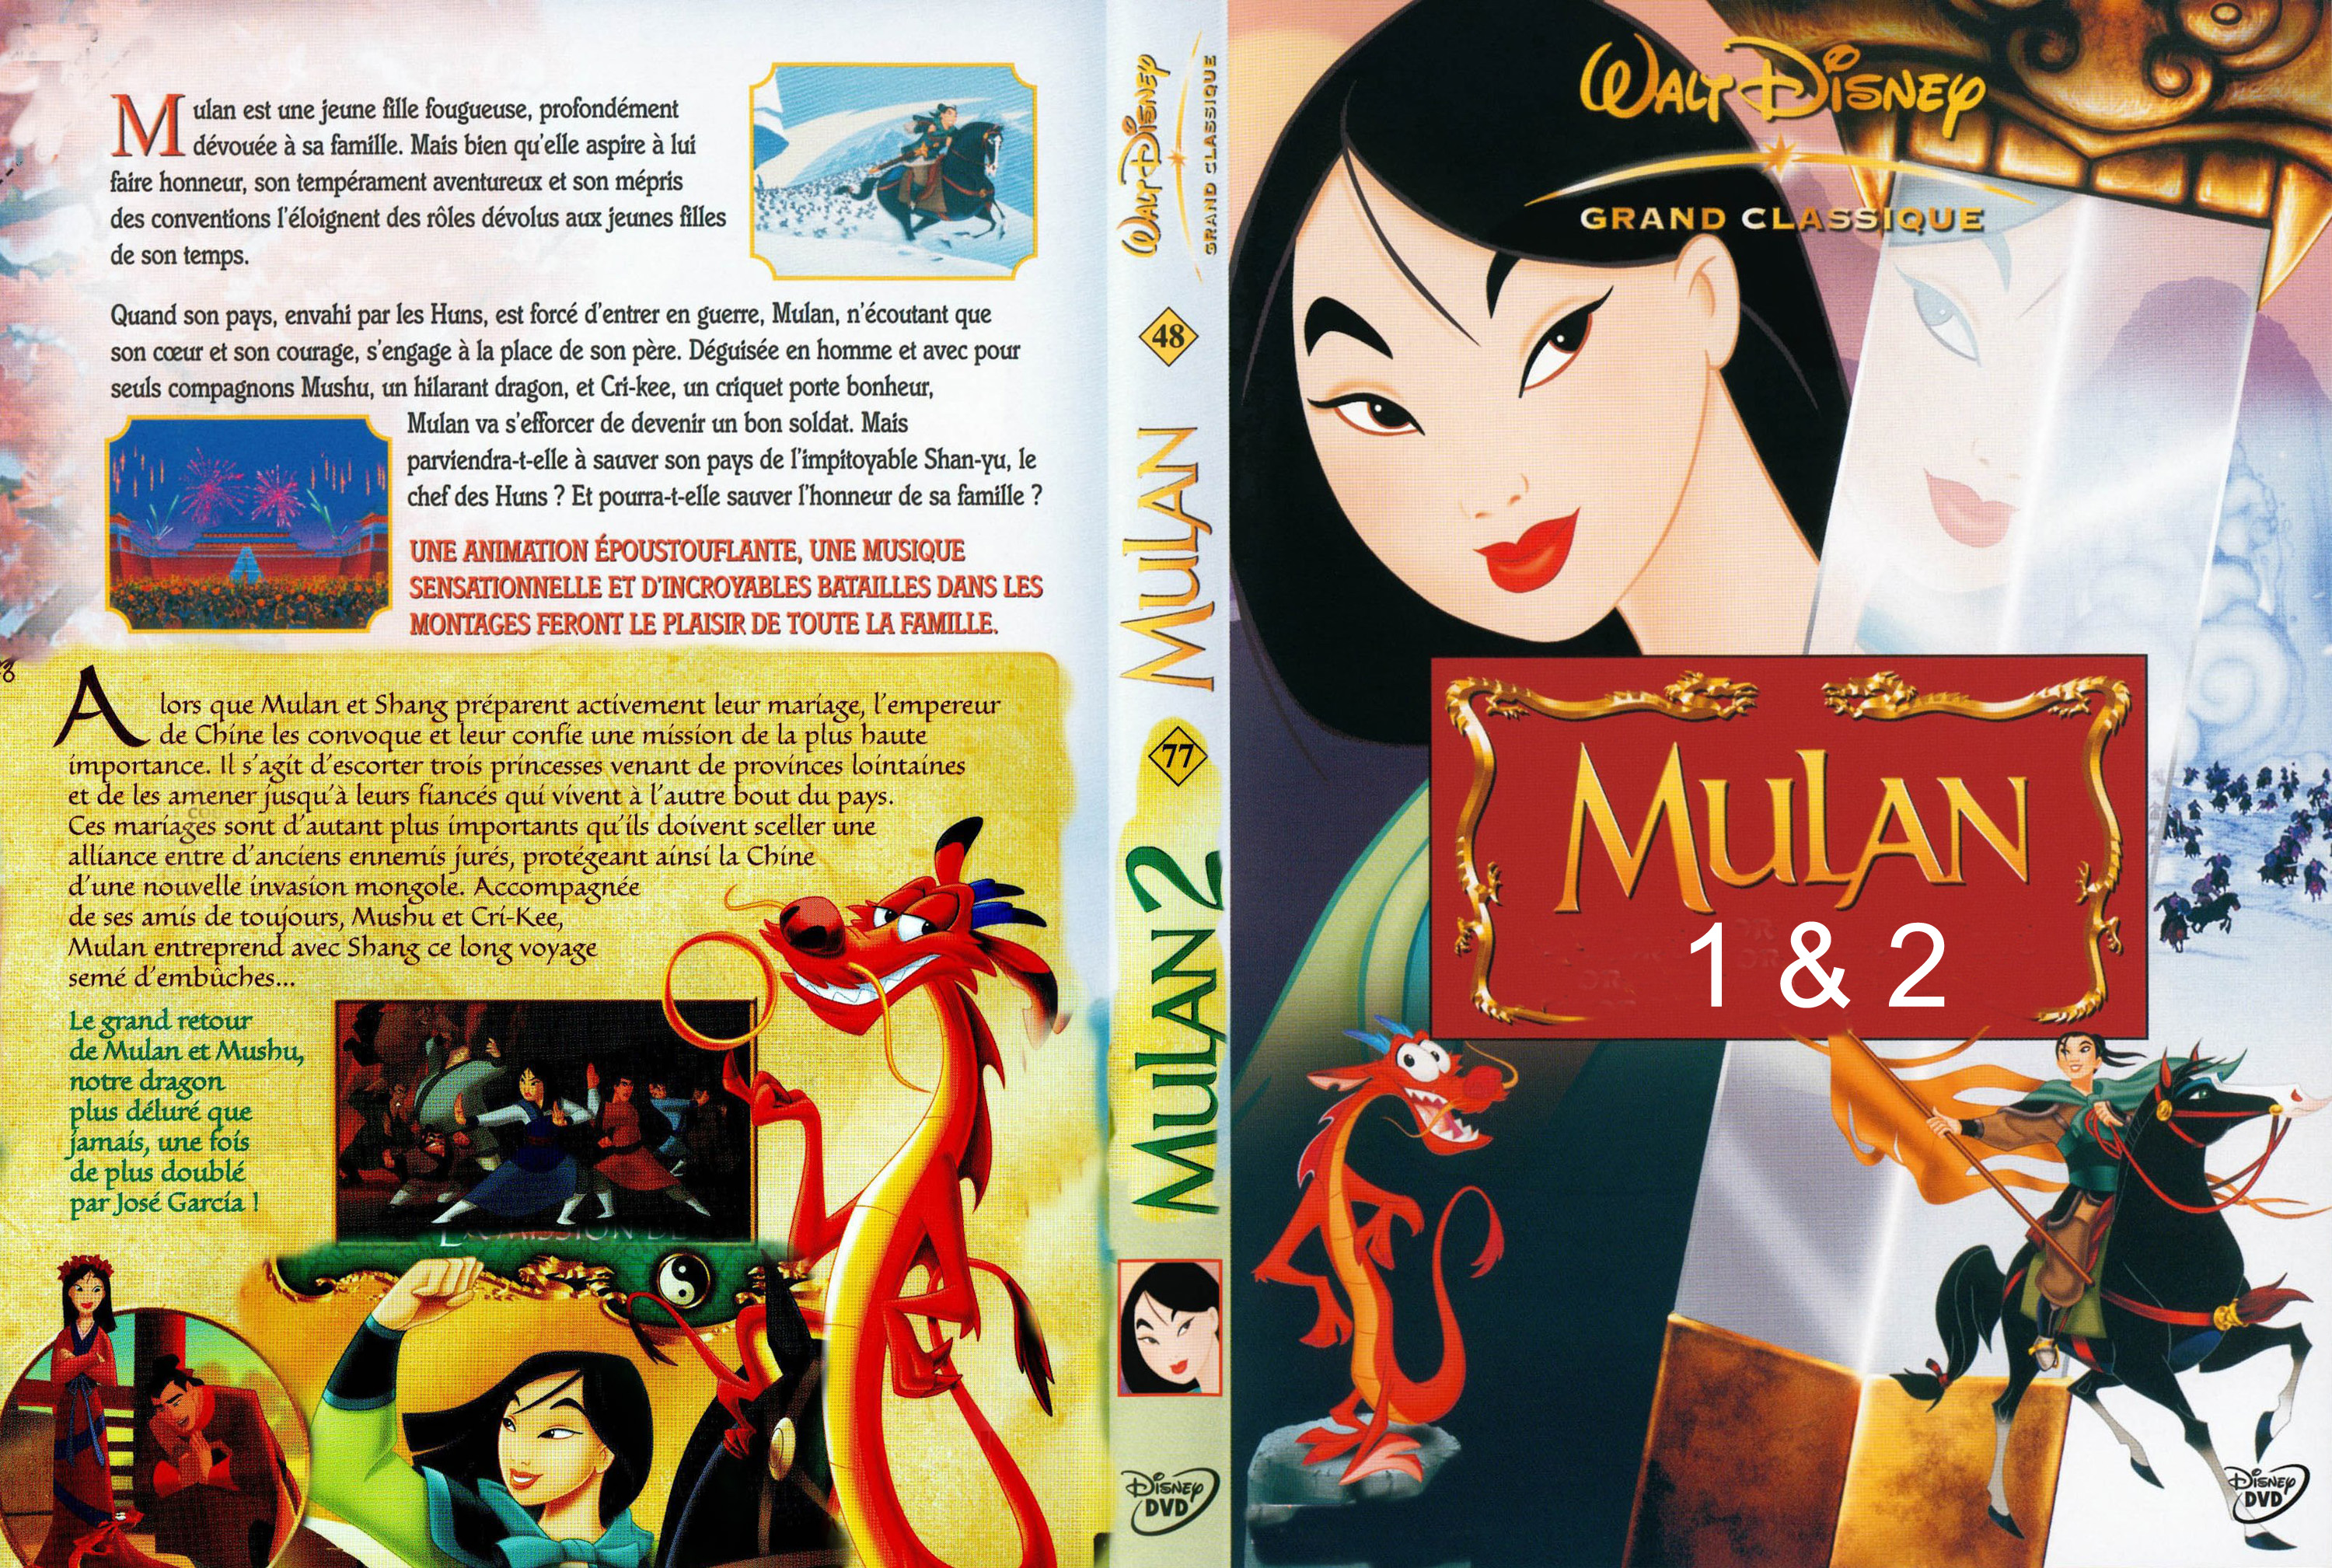 Jaquette DVD Mulan 1 et 2 custom